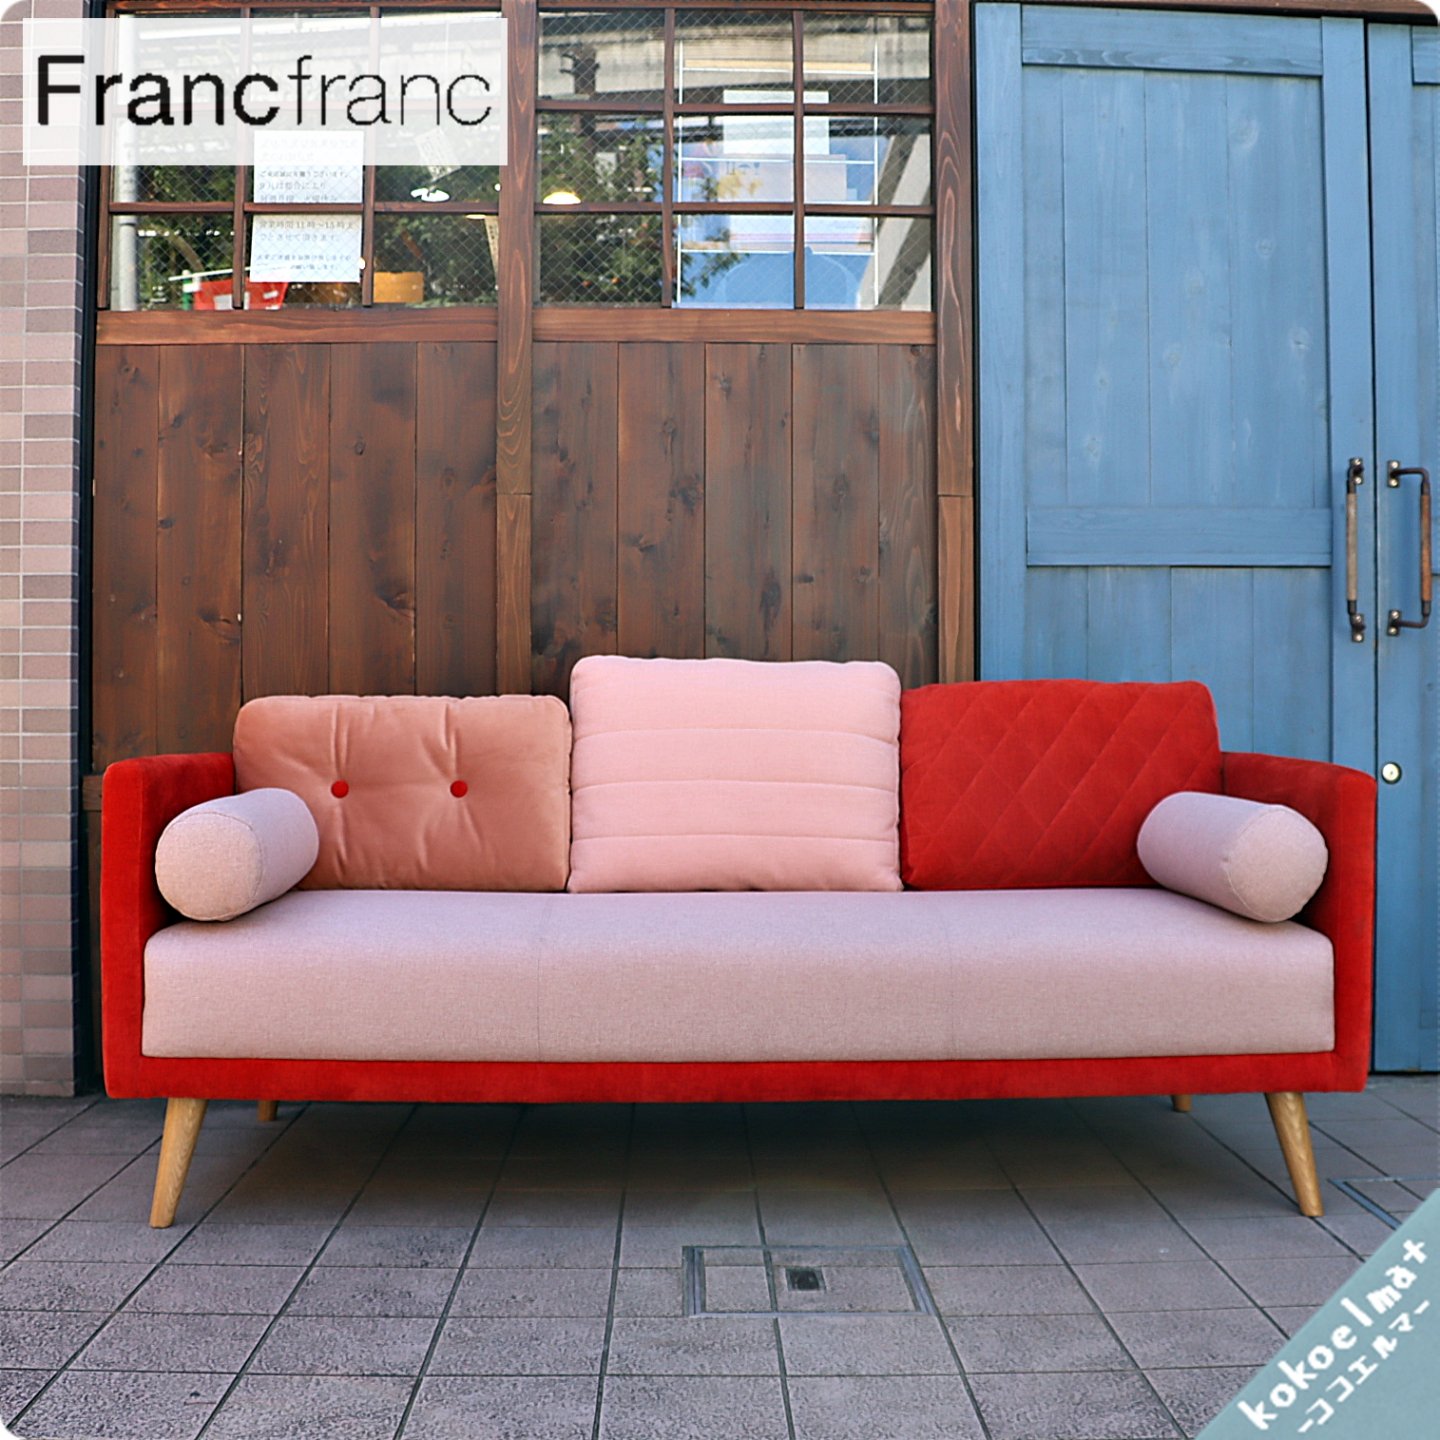 Francfranc(フランフラン)のSMUK sofa(スムークソファー)です 